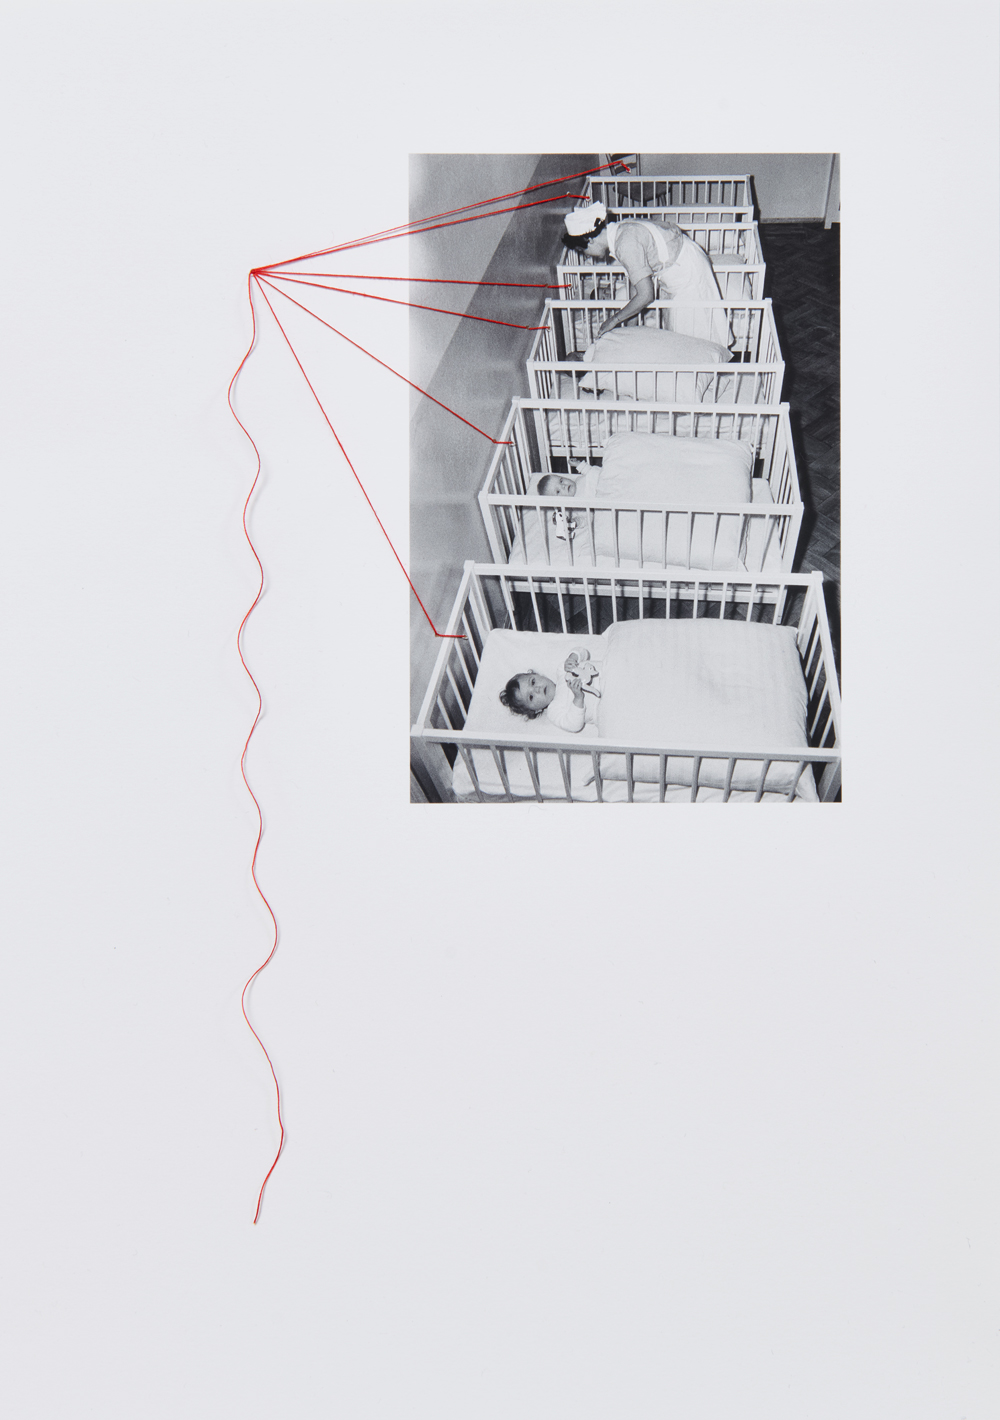 Sophie Linz
„Roter Faden auf Papier mit Foto“, 2022
Collage
30 x 21 cm
unter Verwendung eines Fotos von Erich Höhne & Erich Pohl (1962/1965) © SLUB Dresden/Deutsche Fotothek

Leihgabe der Künstlerin